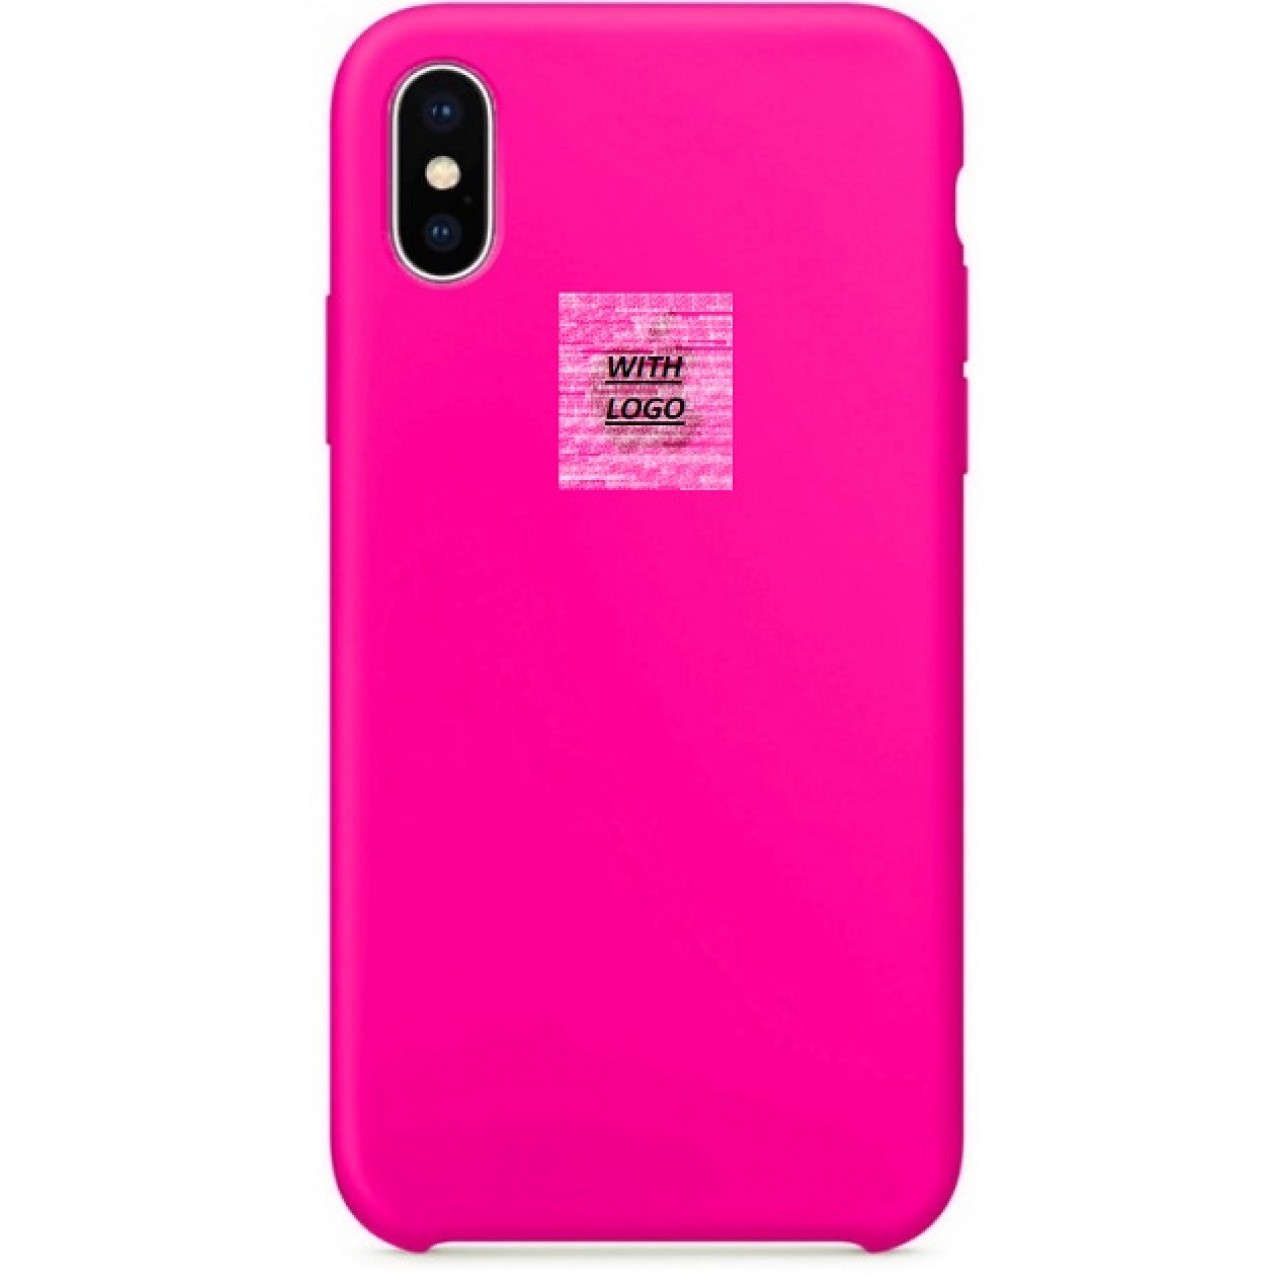 Θήκη Προστασίας Σιλικόνης iPhone XR - Back Cover Silicone Case - Pink